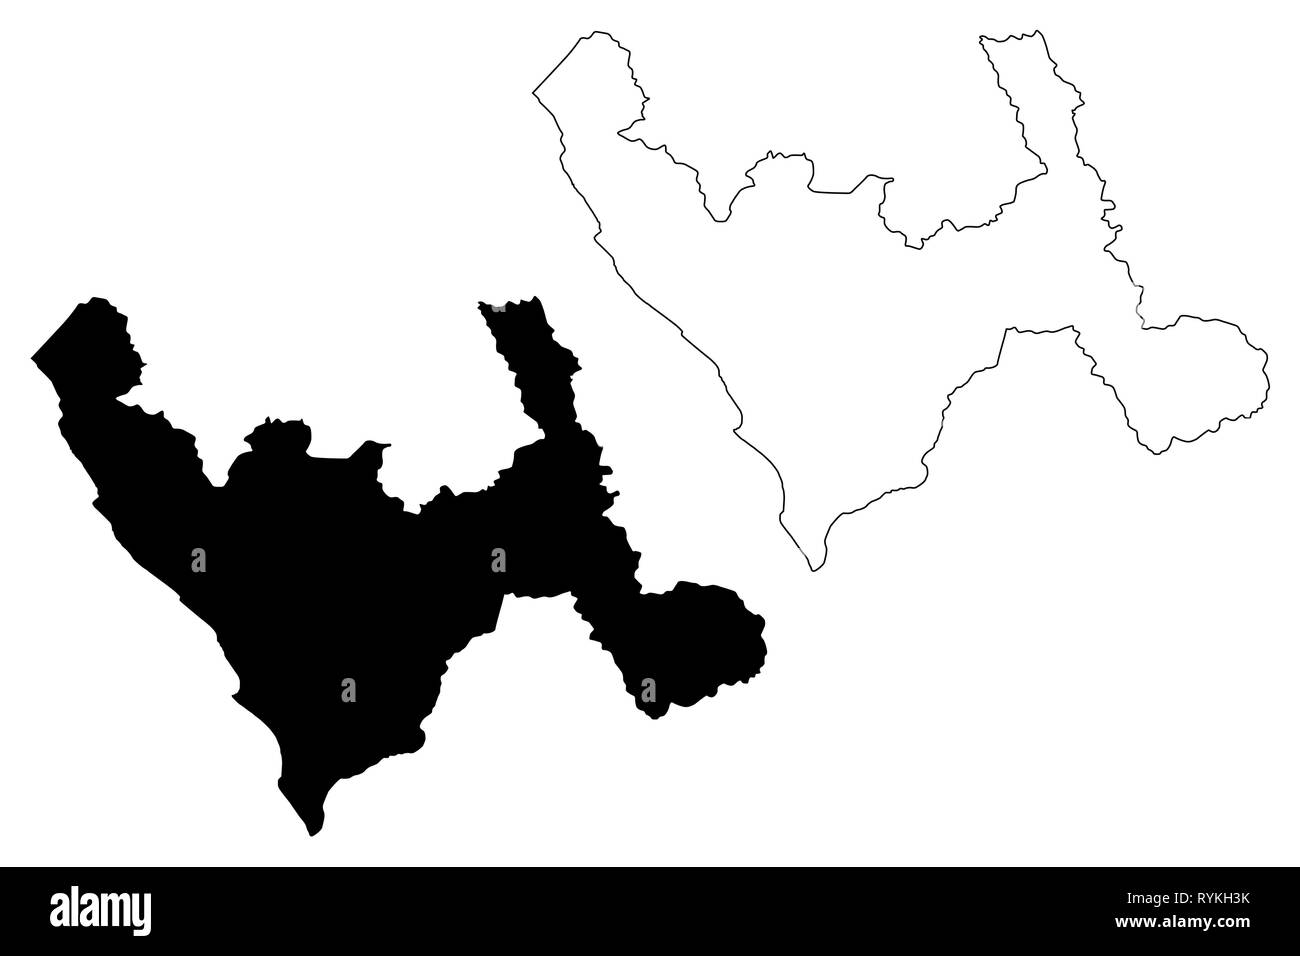 Abteilung von La Libertad (Republik Peru, Regionen von Peru) Karte Vektor-illustration, kritzeln Skizze La Libertad Karte Stock Vektor